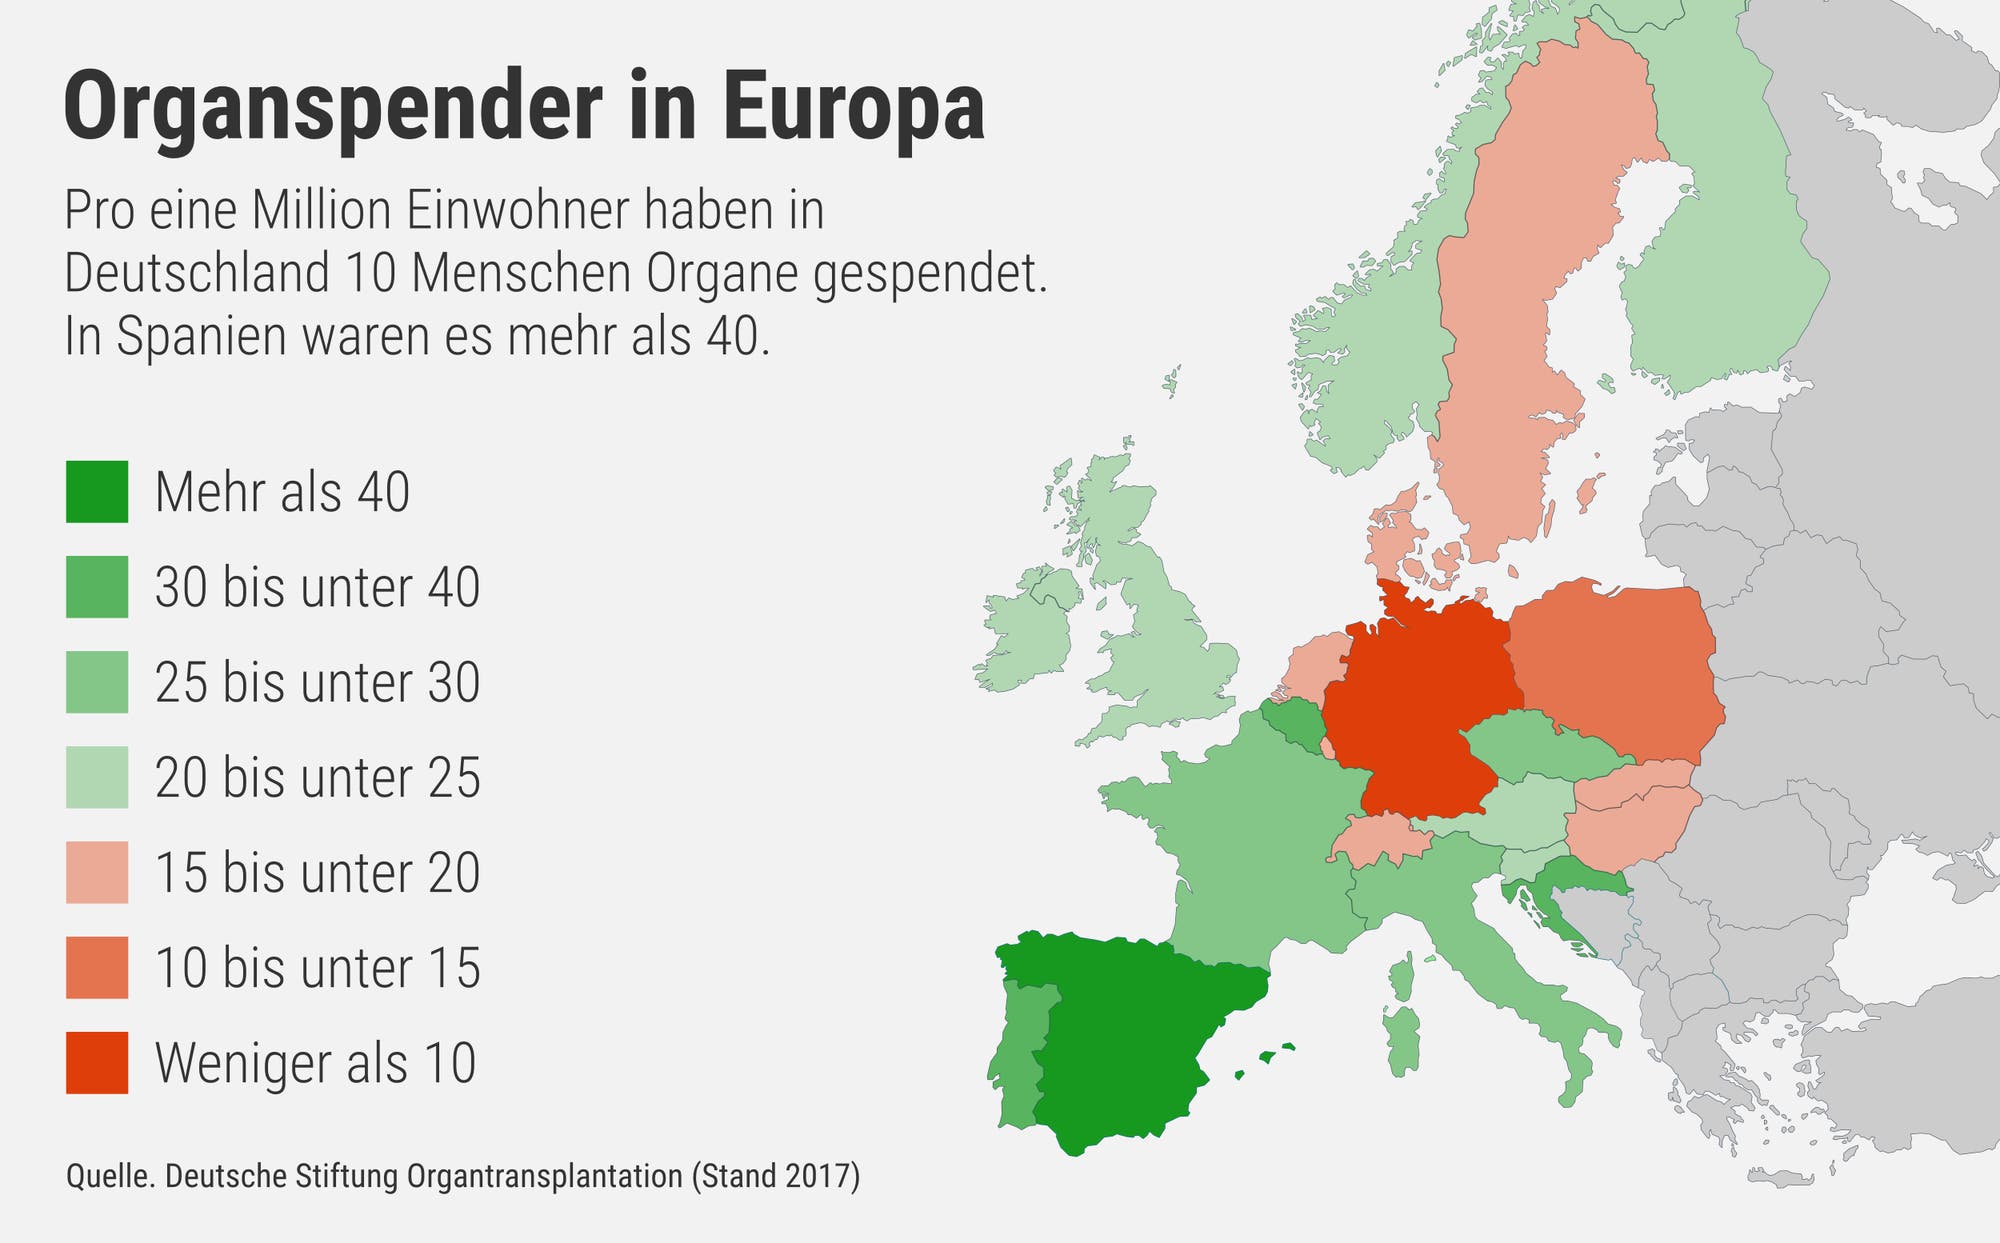 Deutschland hat deutlich weniger Organspender als andere Länder Europas.